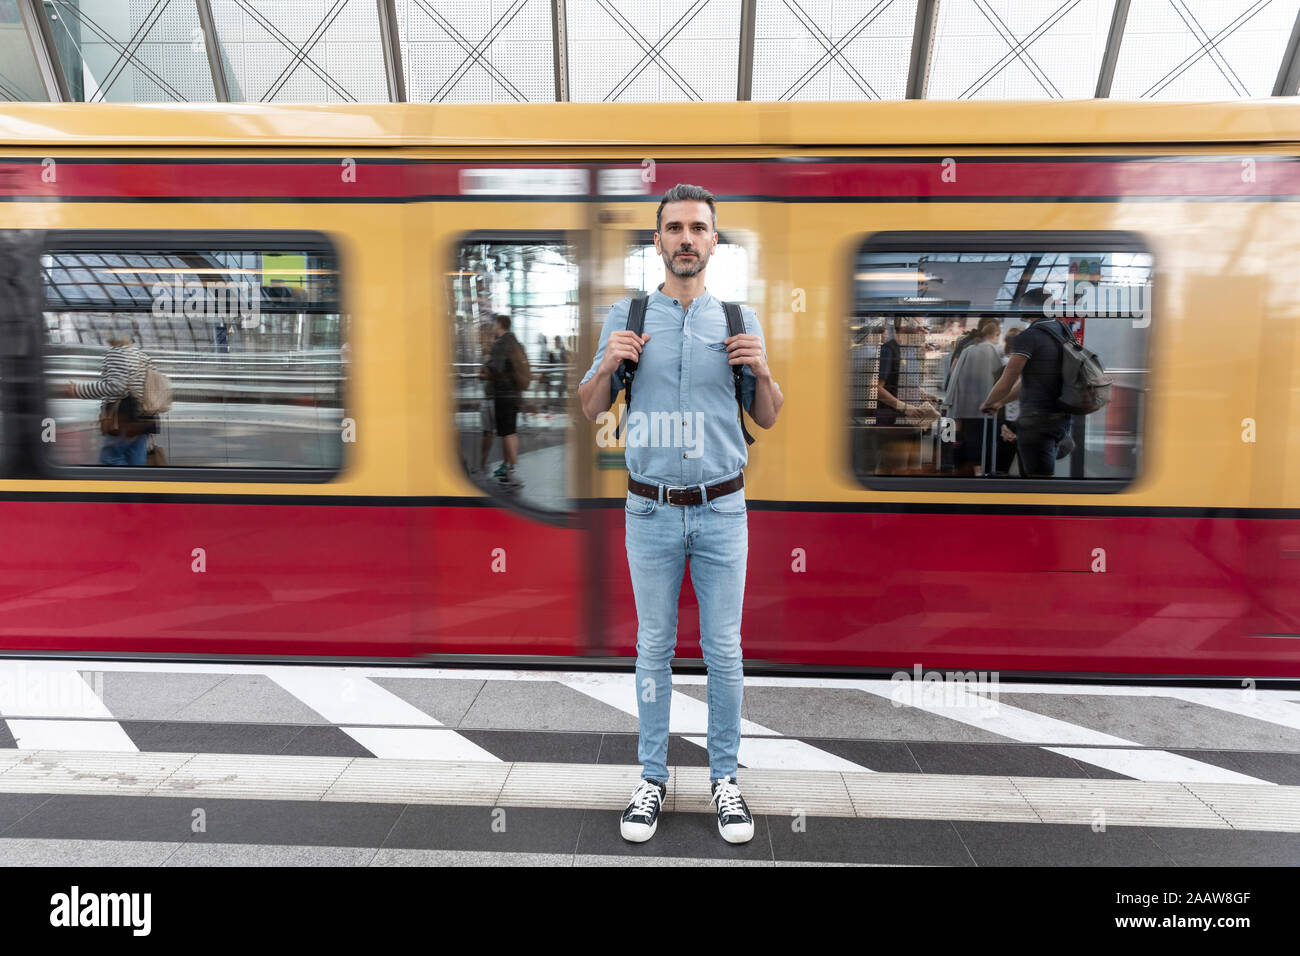 Portrait de l'homme à la plate-forme de la gare avec train en arrière-plan, Berlin, Allemagne Banque D'Images